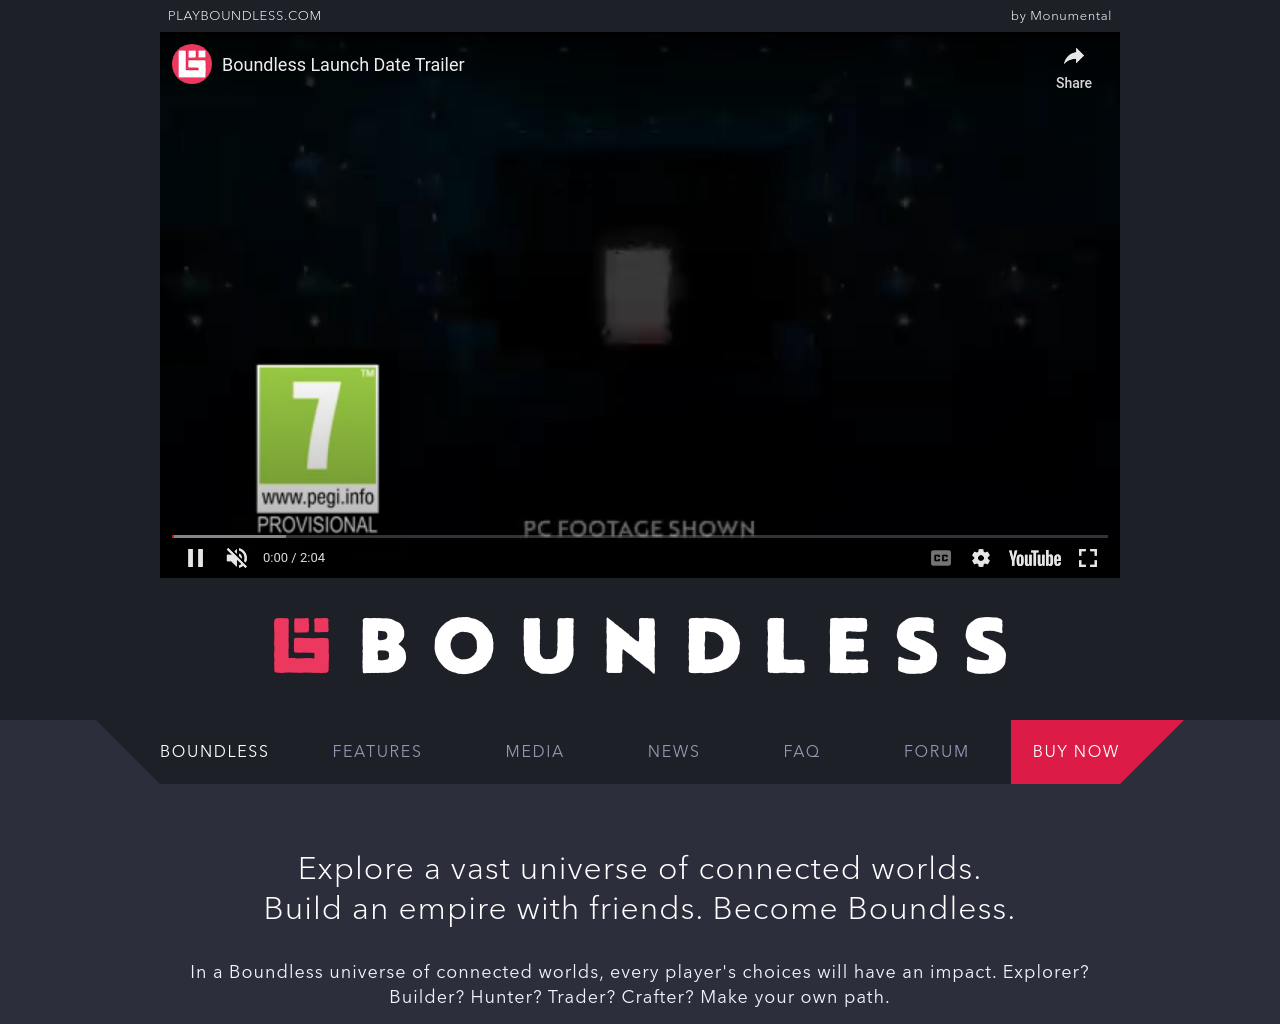 playboundless.com